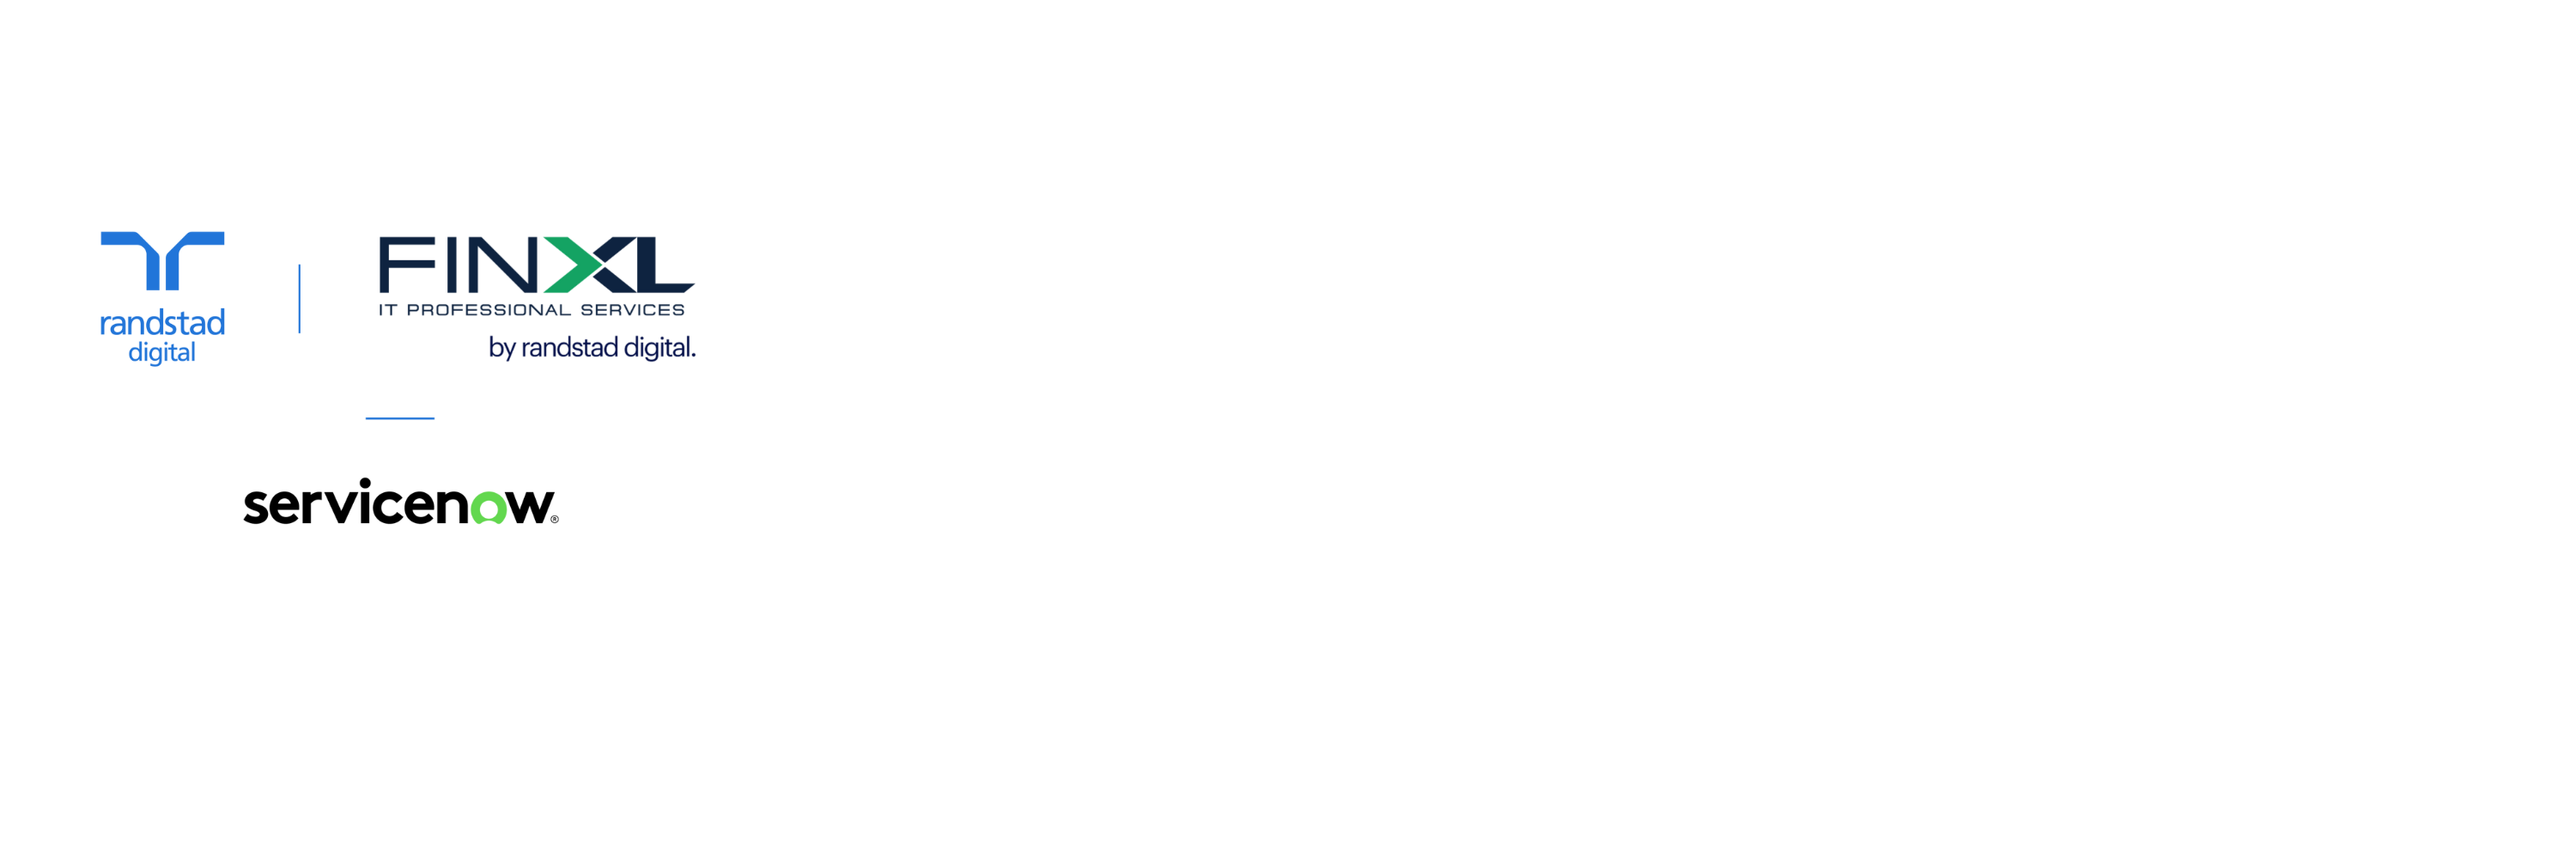 randstad digital, finXL, servicenow logo